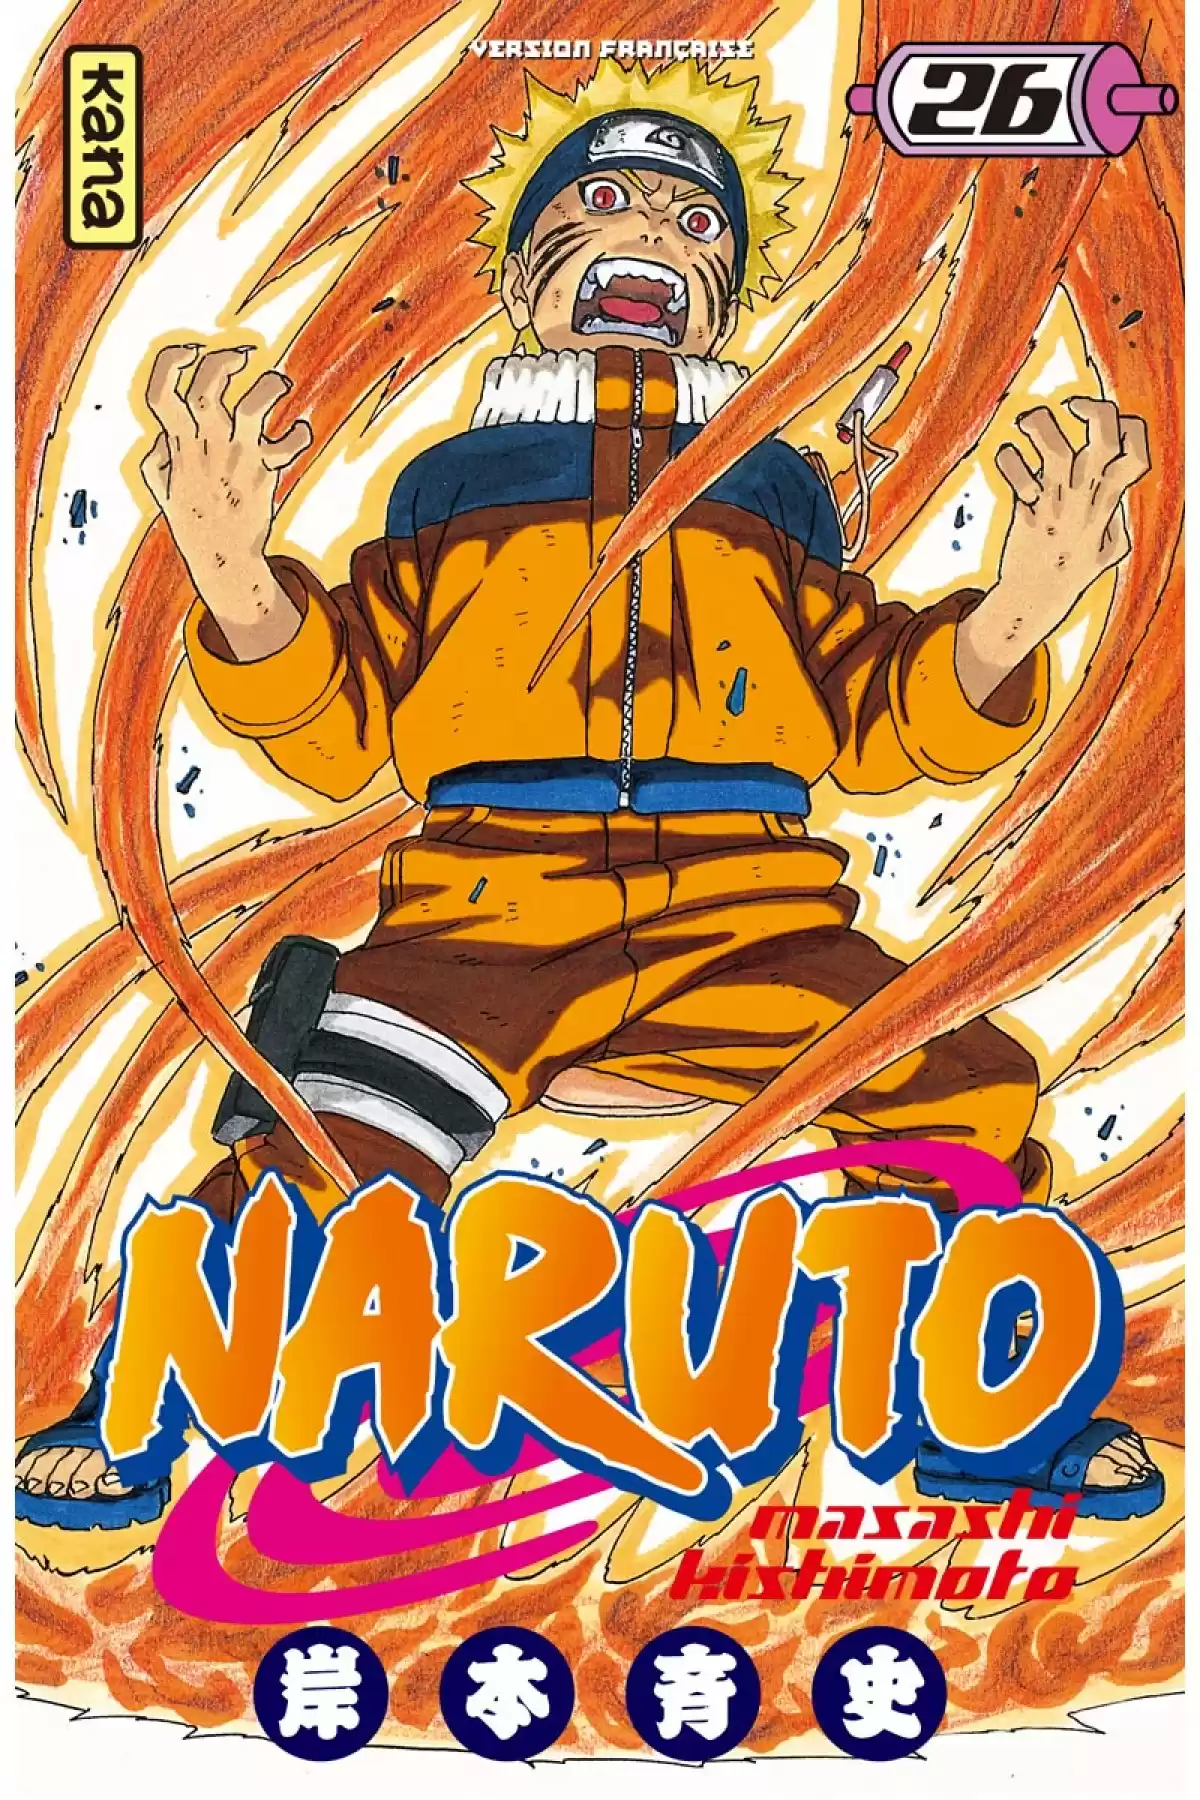 Naruto Volume 26 page 1